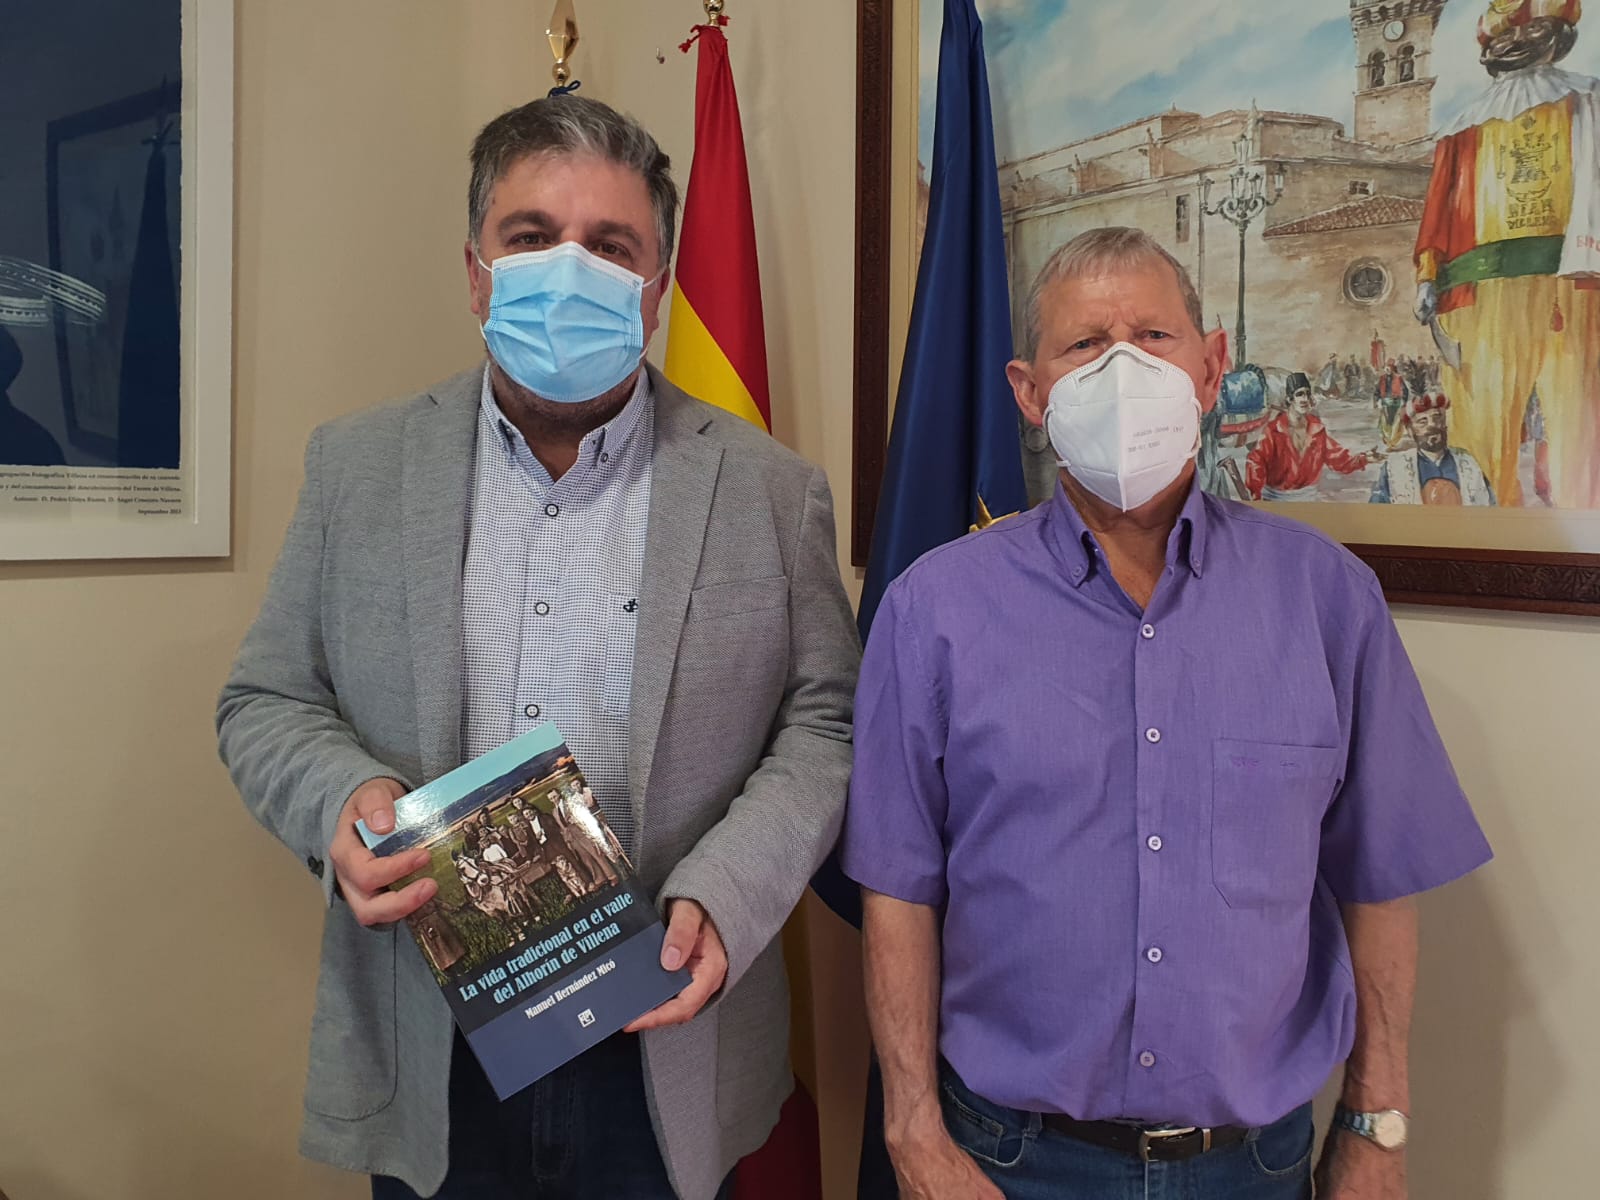 El alcalde recibe un ejemplar del libro ‘La vida tradicional en el Valle del Alhorín de Villena’ de Manuel Hernández